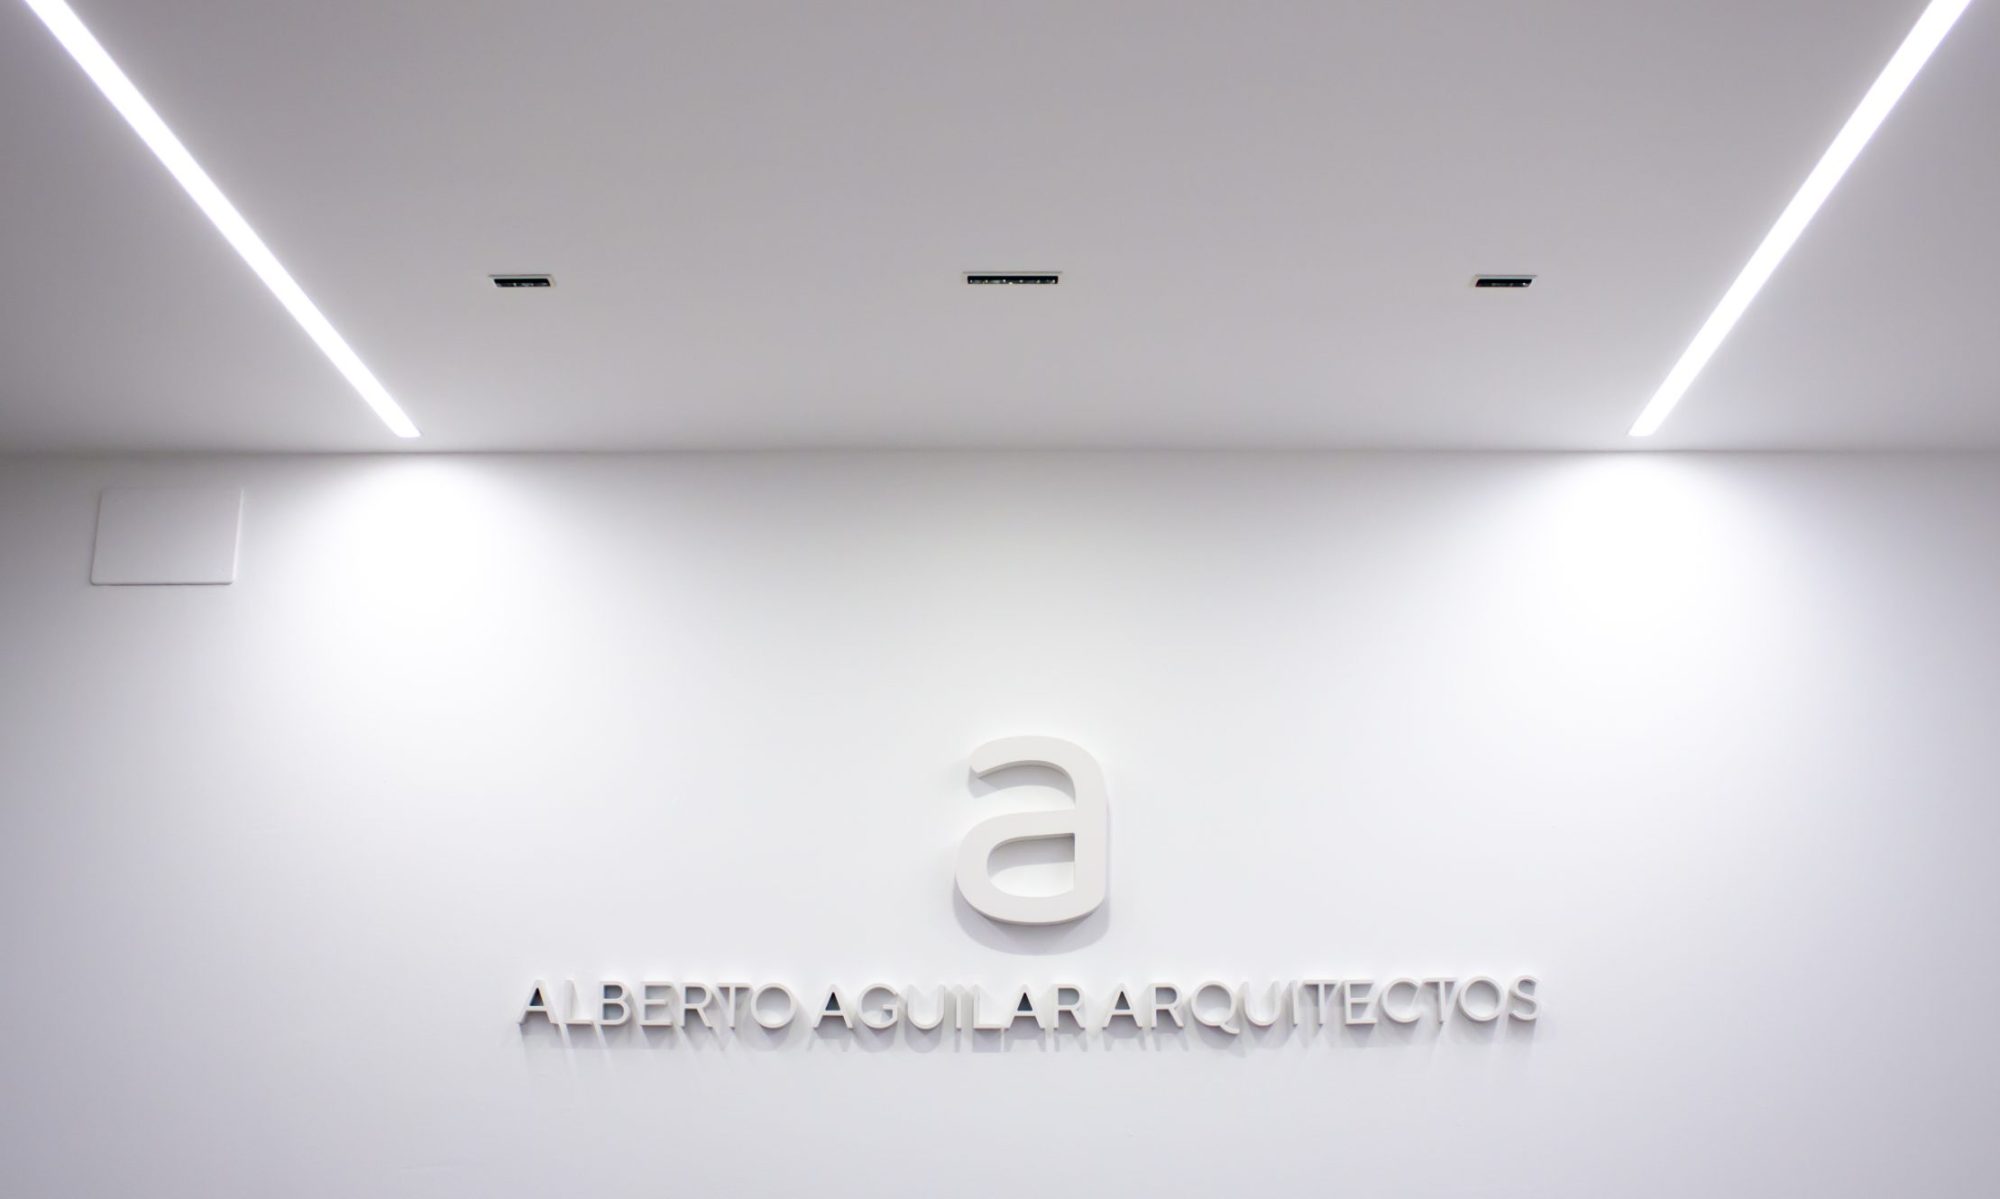 Alberto Aguilar Arquitectos